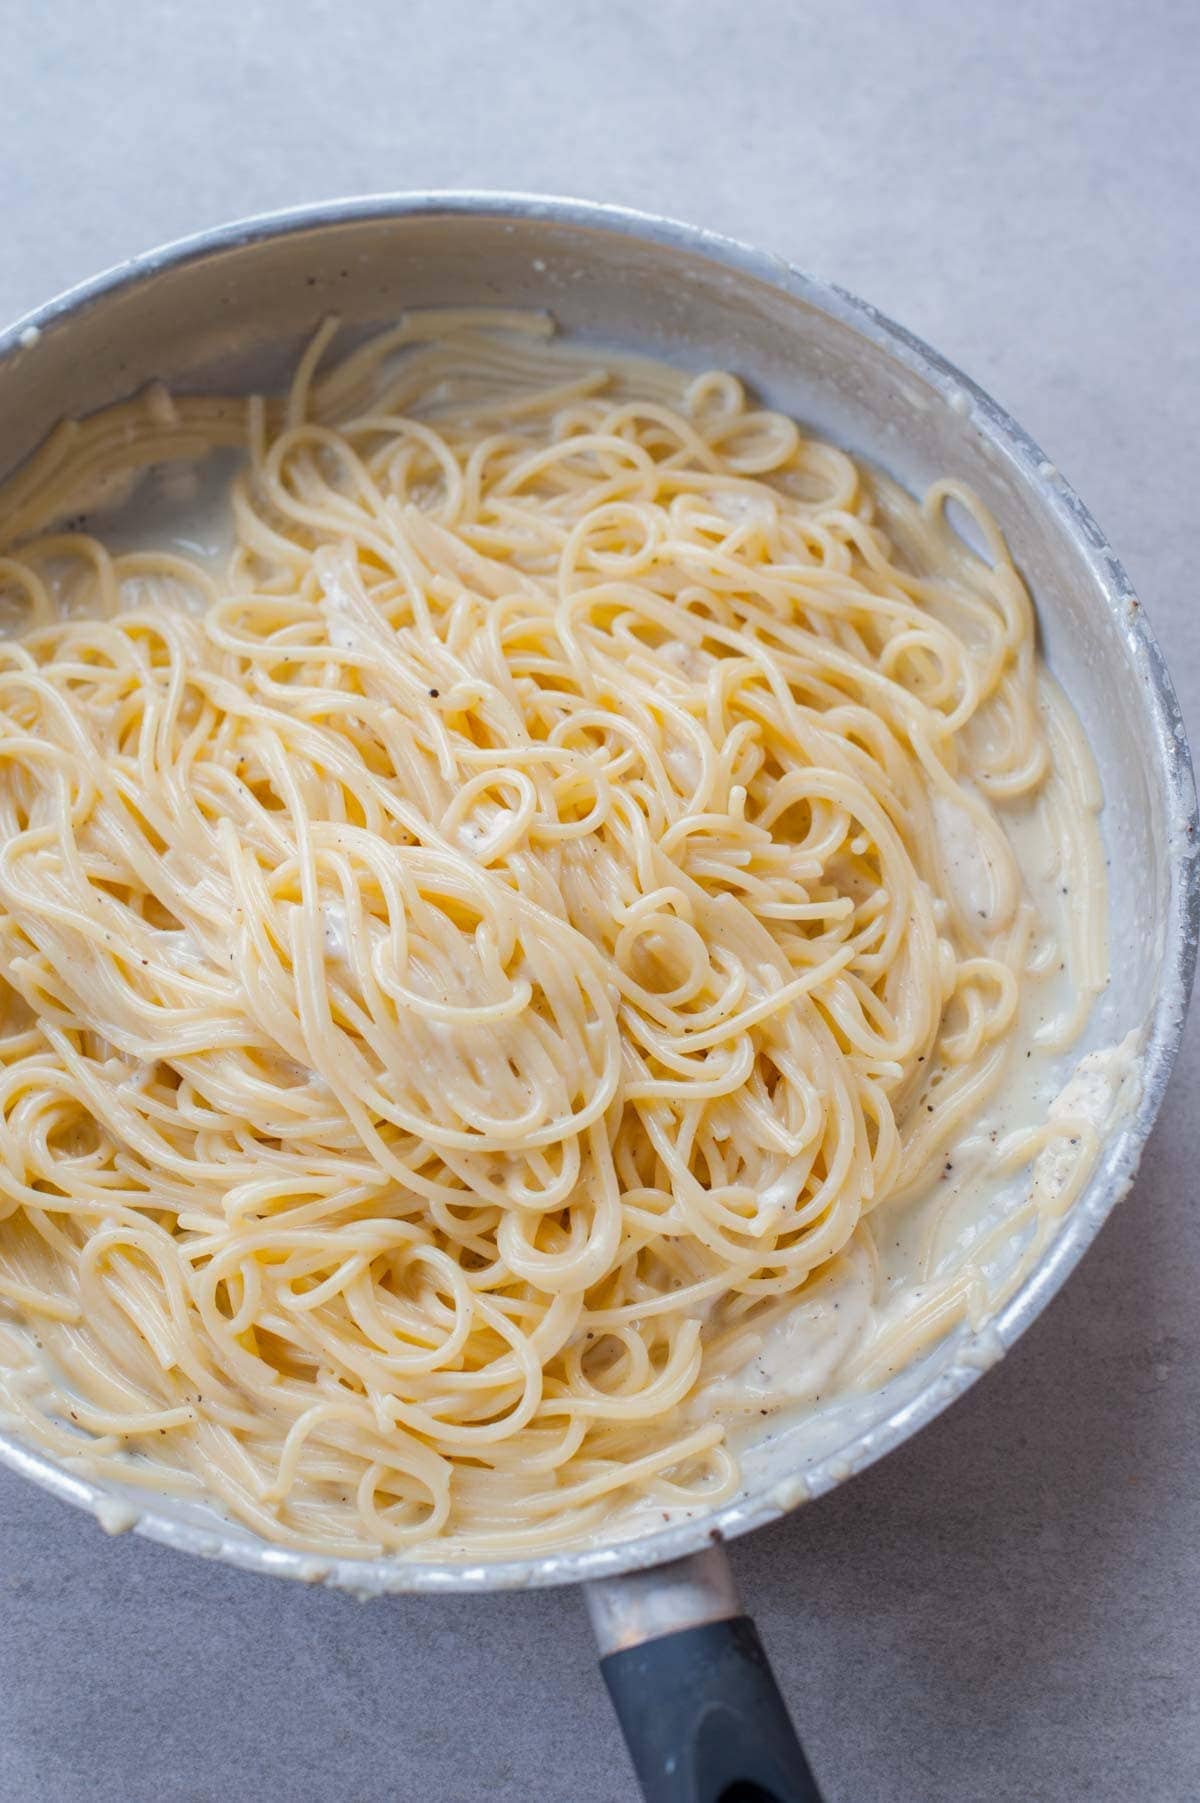 Spaghetti cacio e pepe - Everyday Delicious